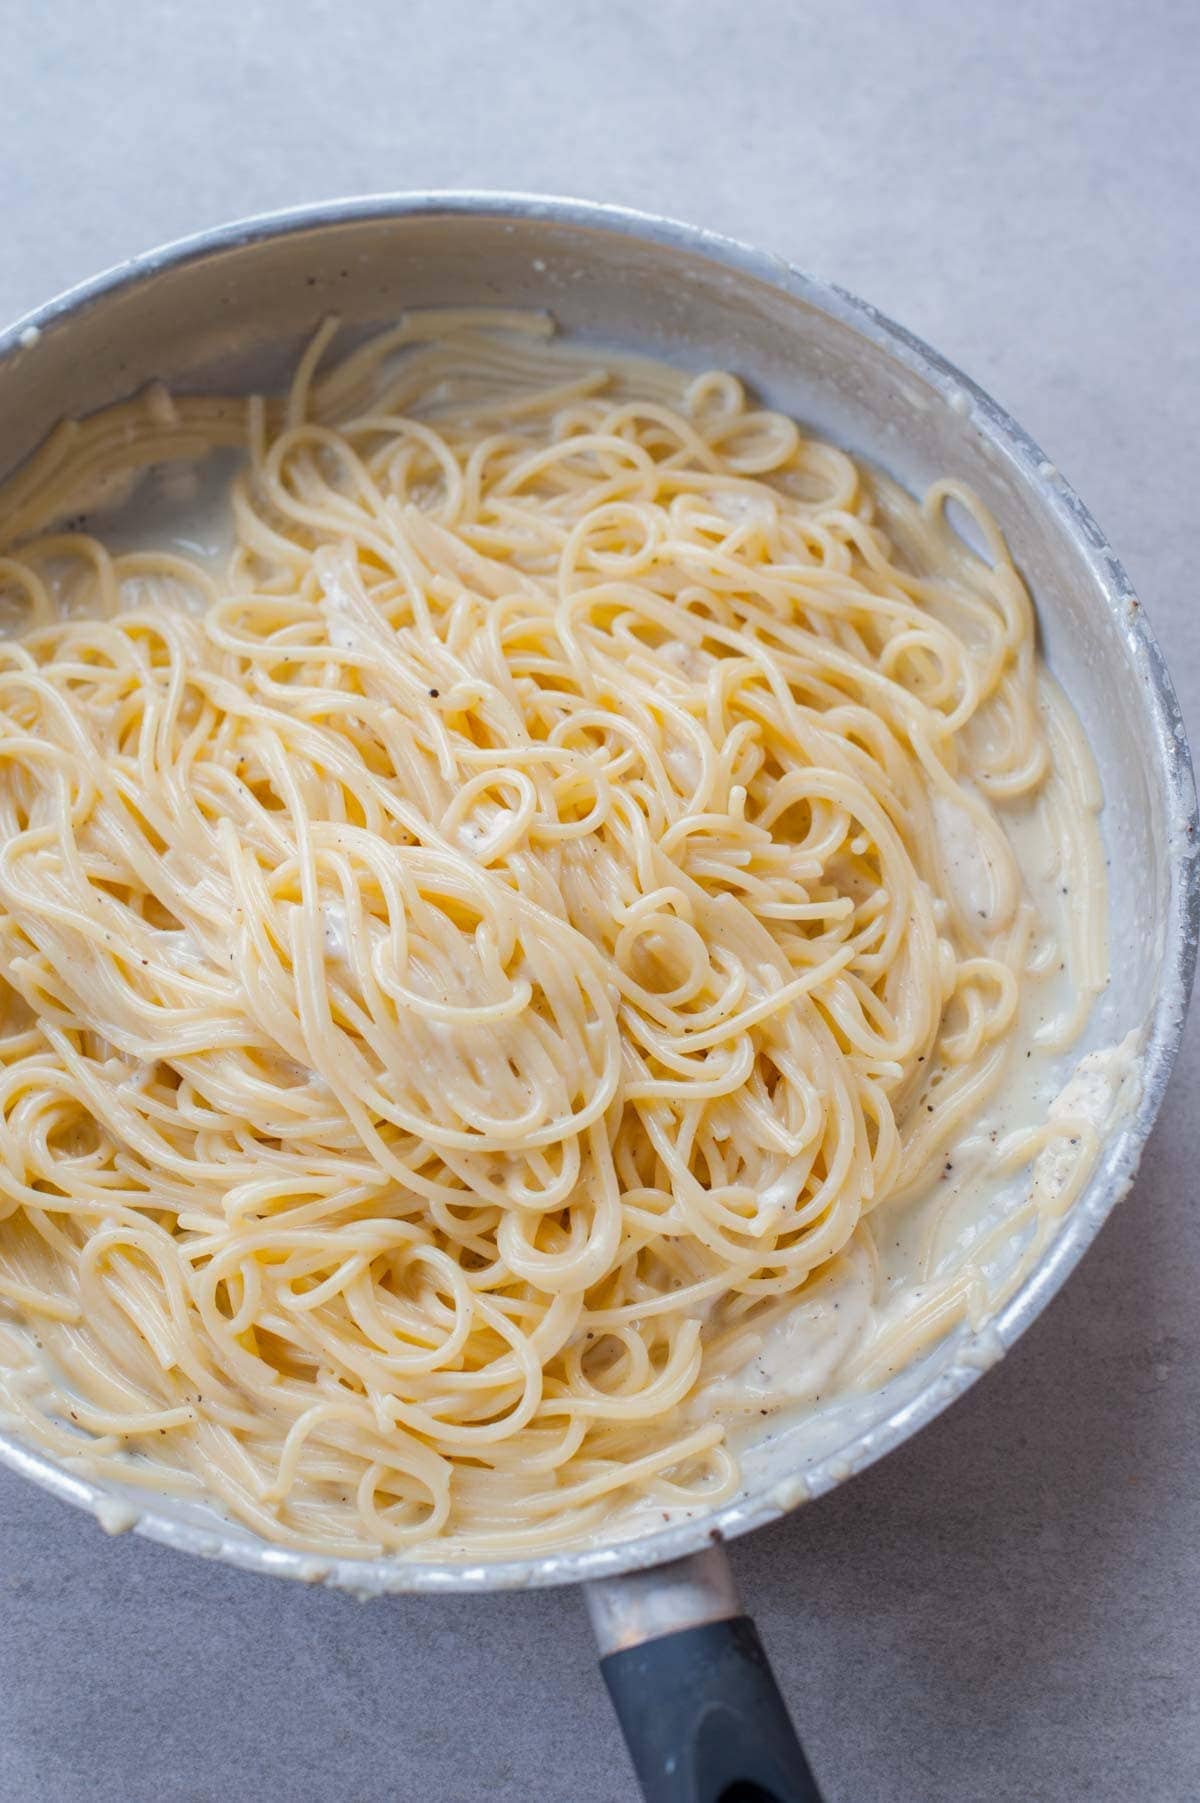 Spaghetti cacio e pepe - Everyday Delicious